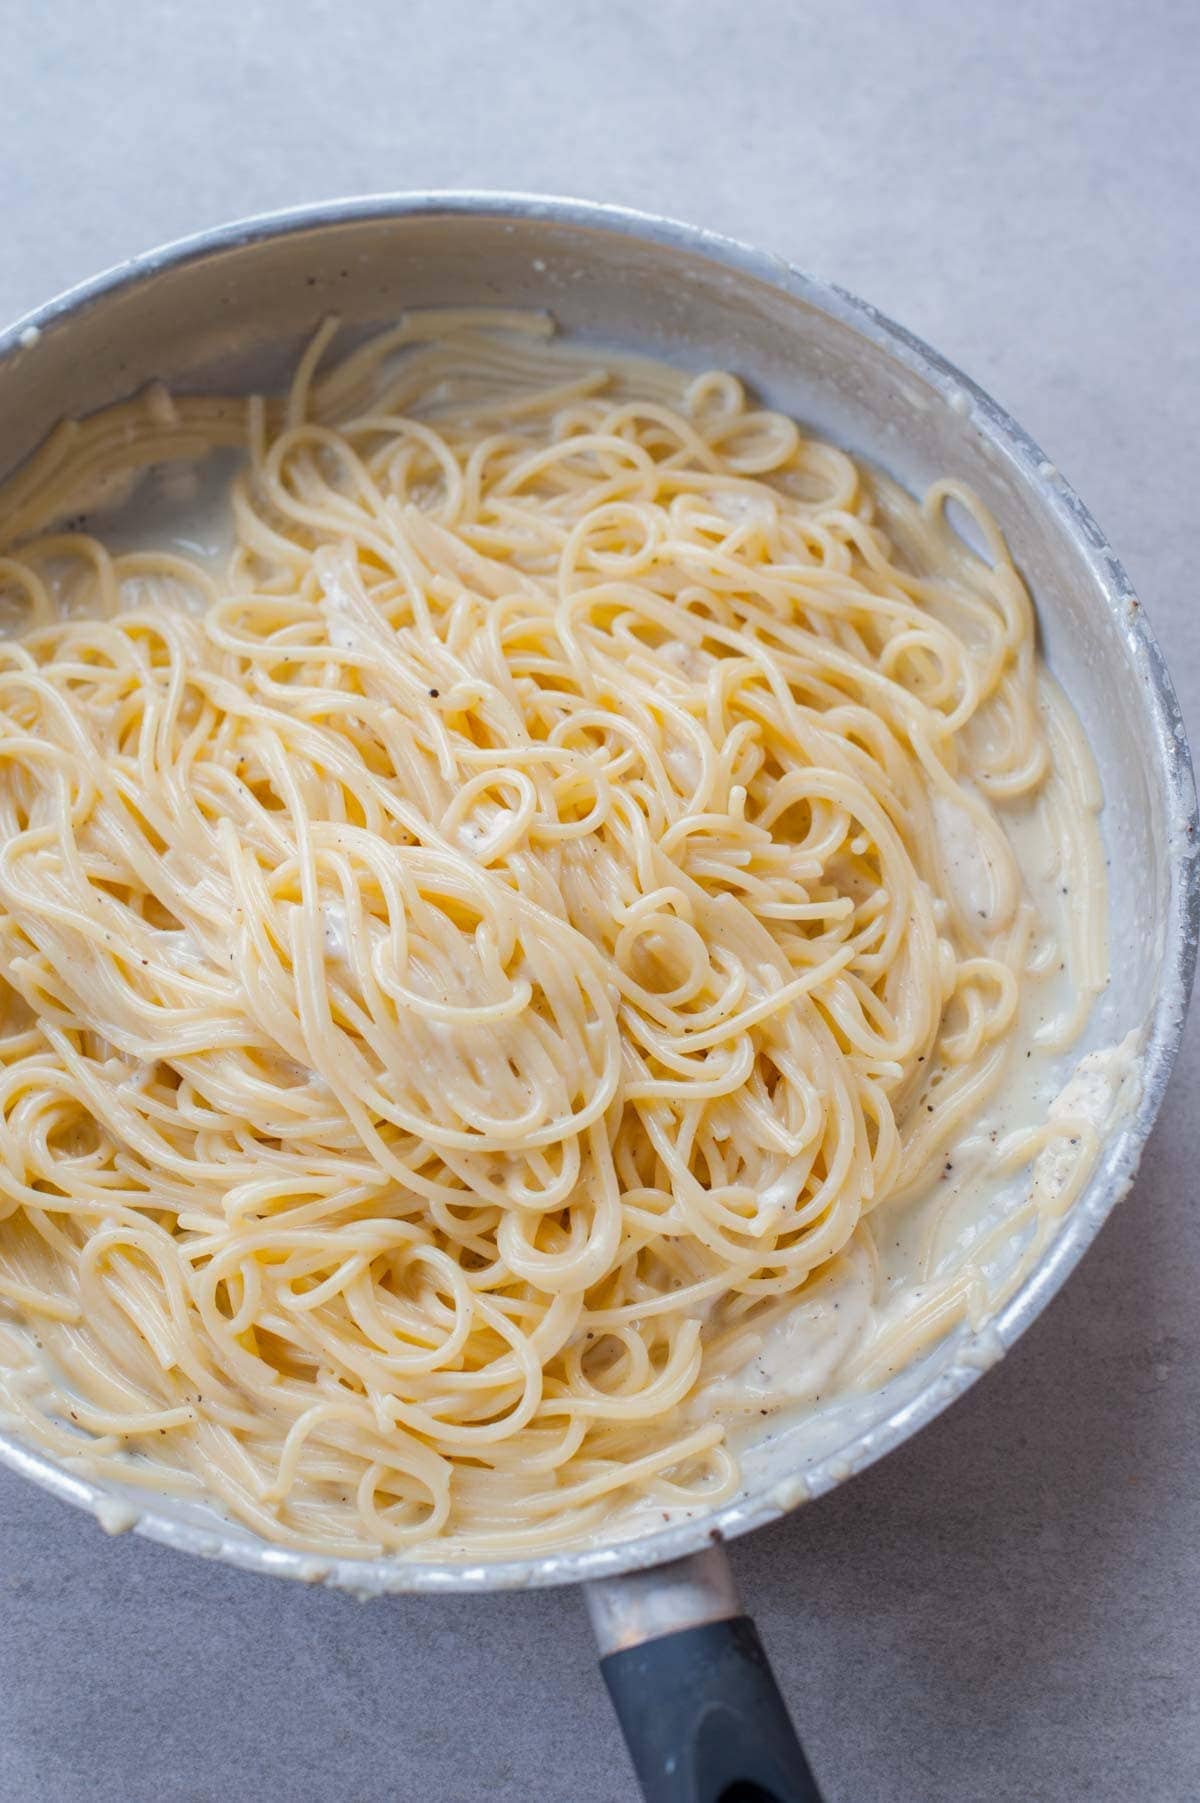 Spaghetti cacio e pepe - Everyday Delicious